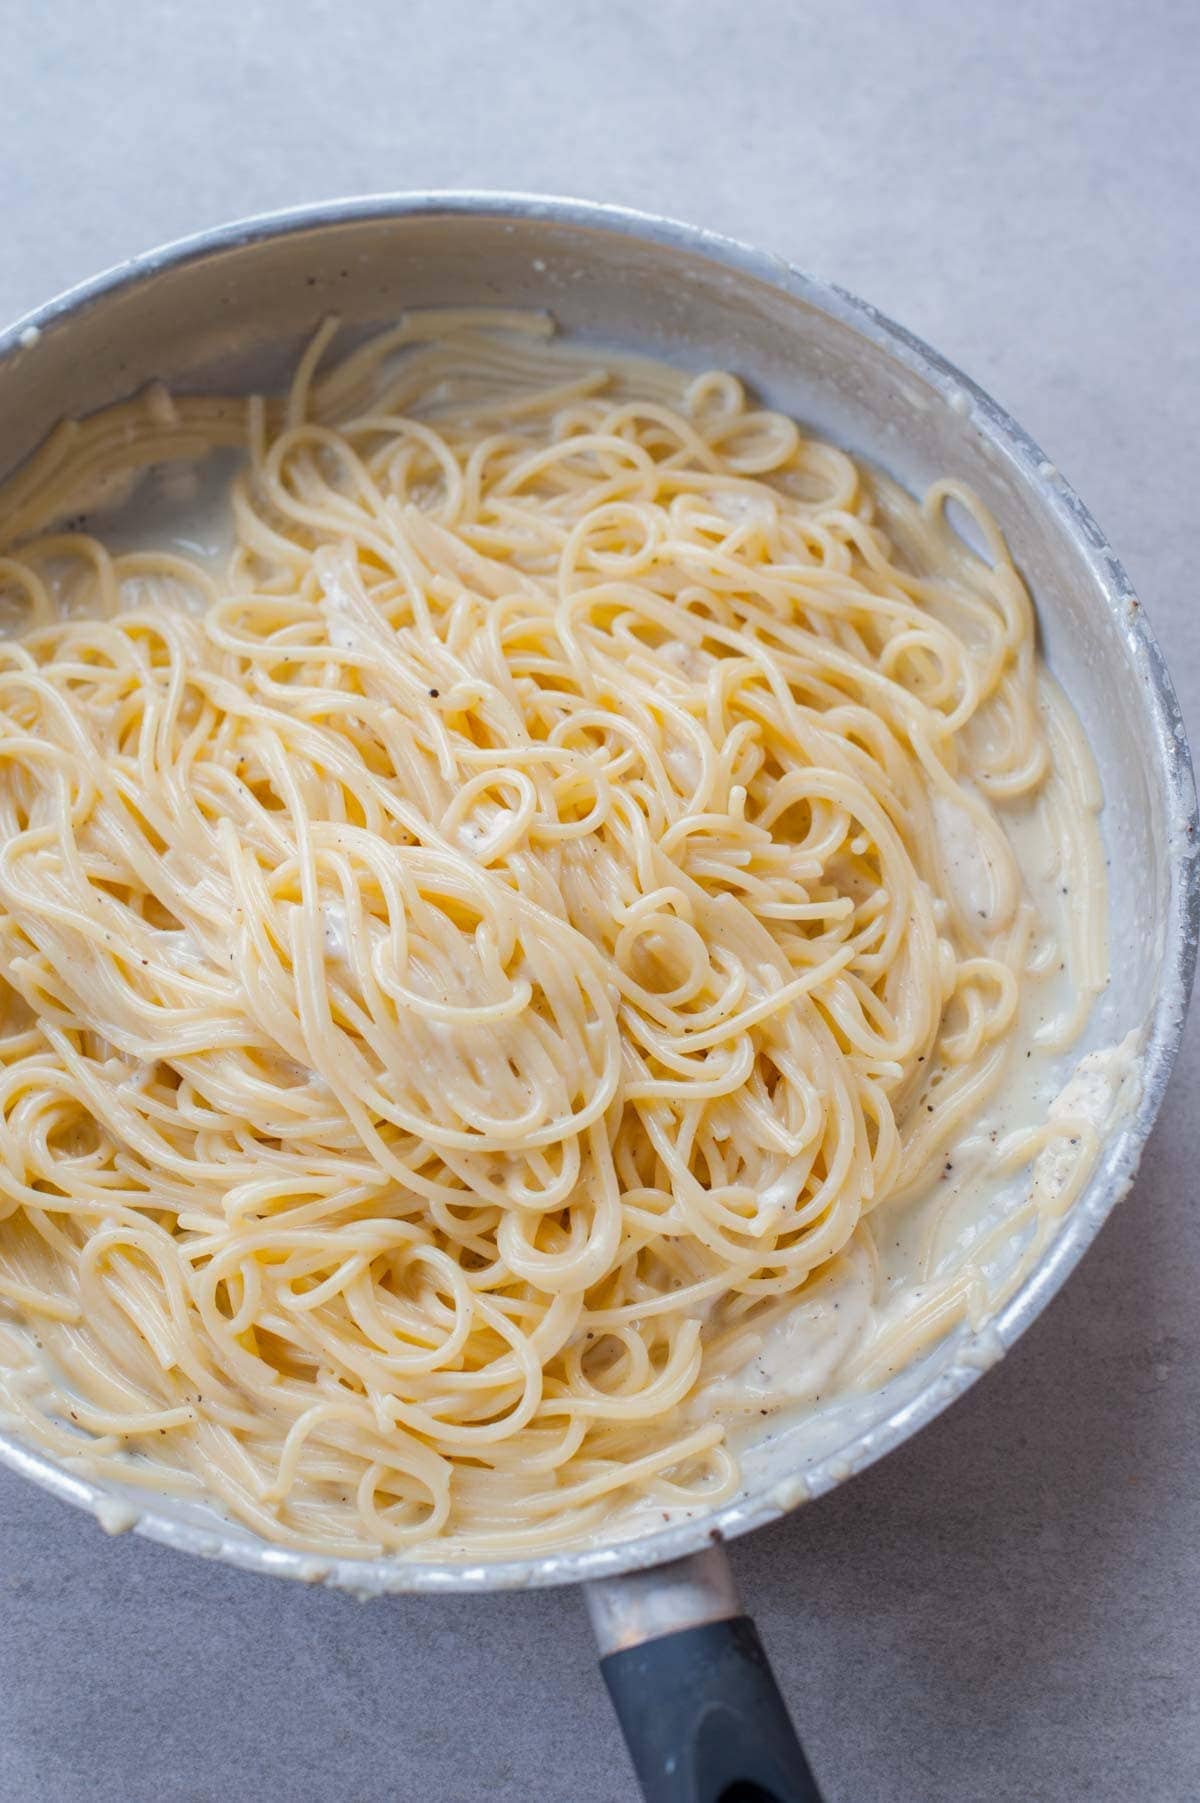 Spaghetti cacio e pepe - Everyday Delicious